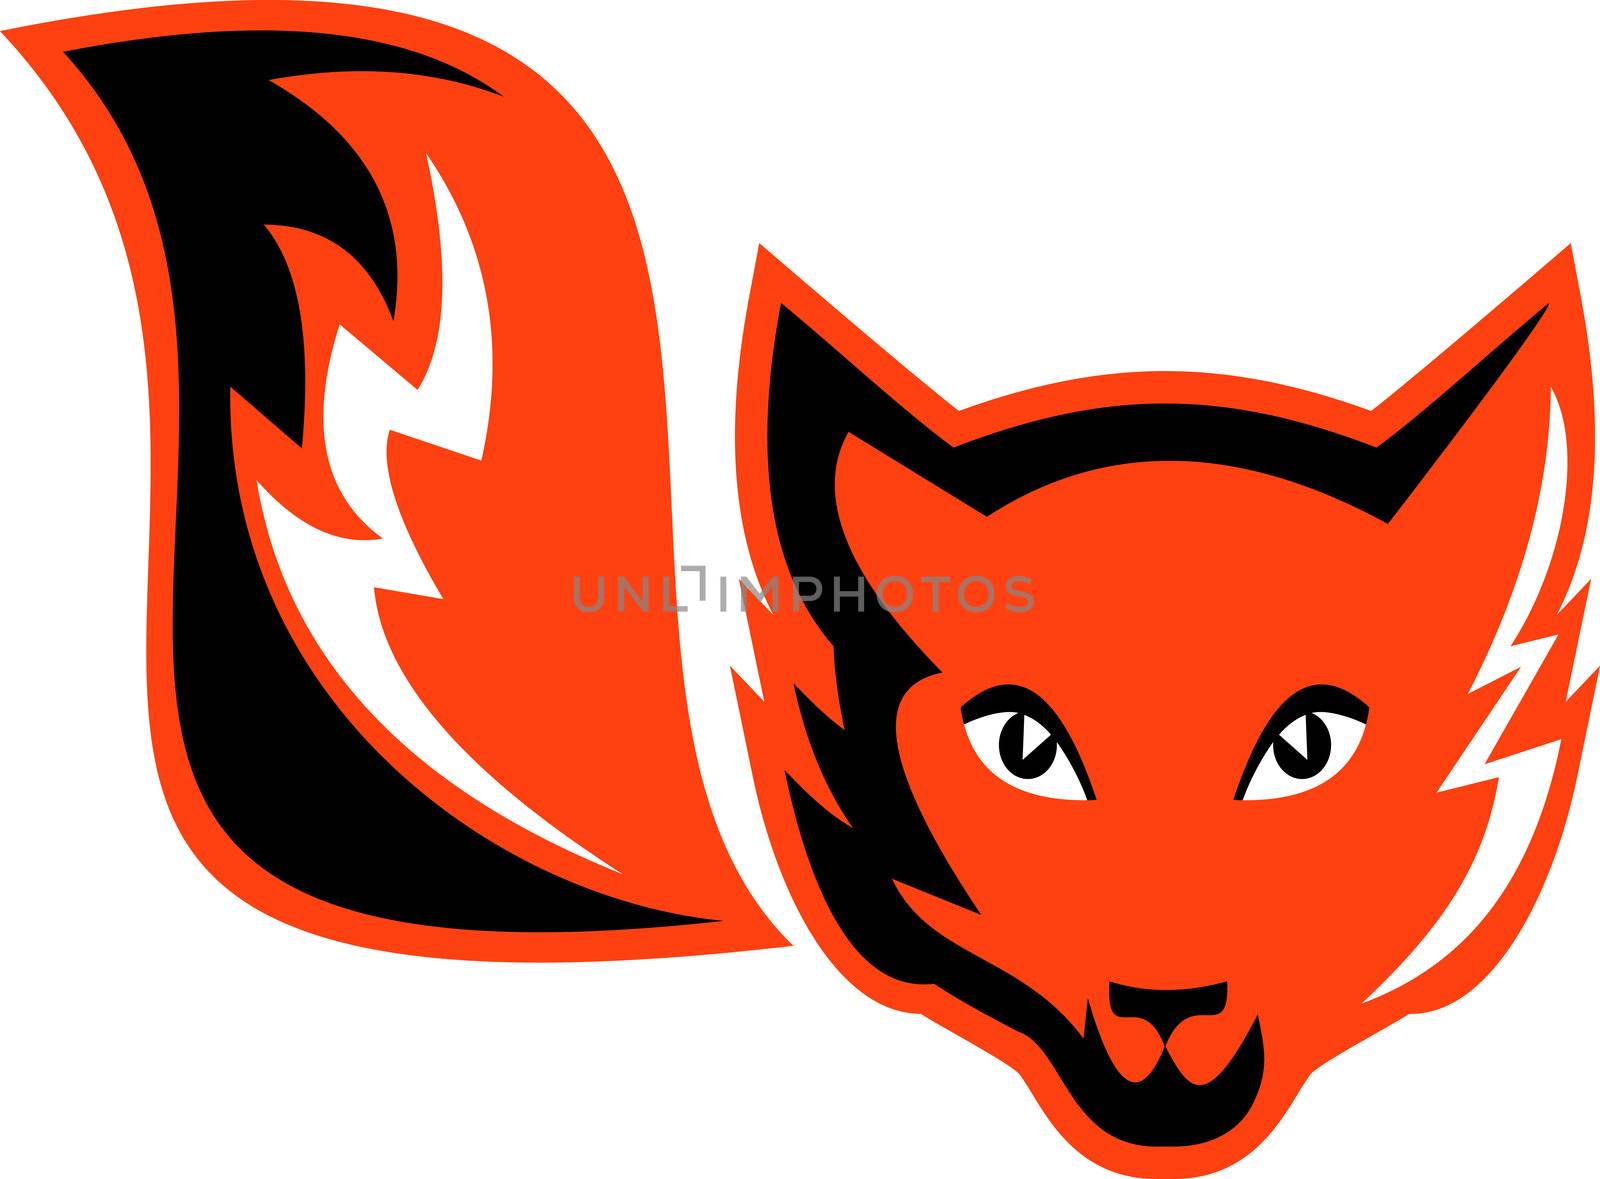 Red Fox tail icon by patrimonio